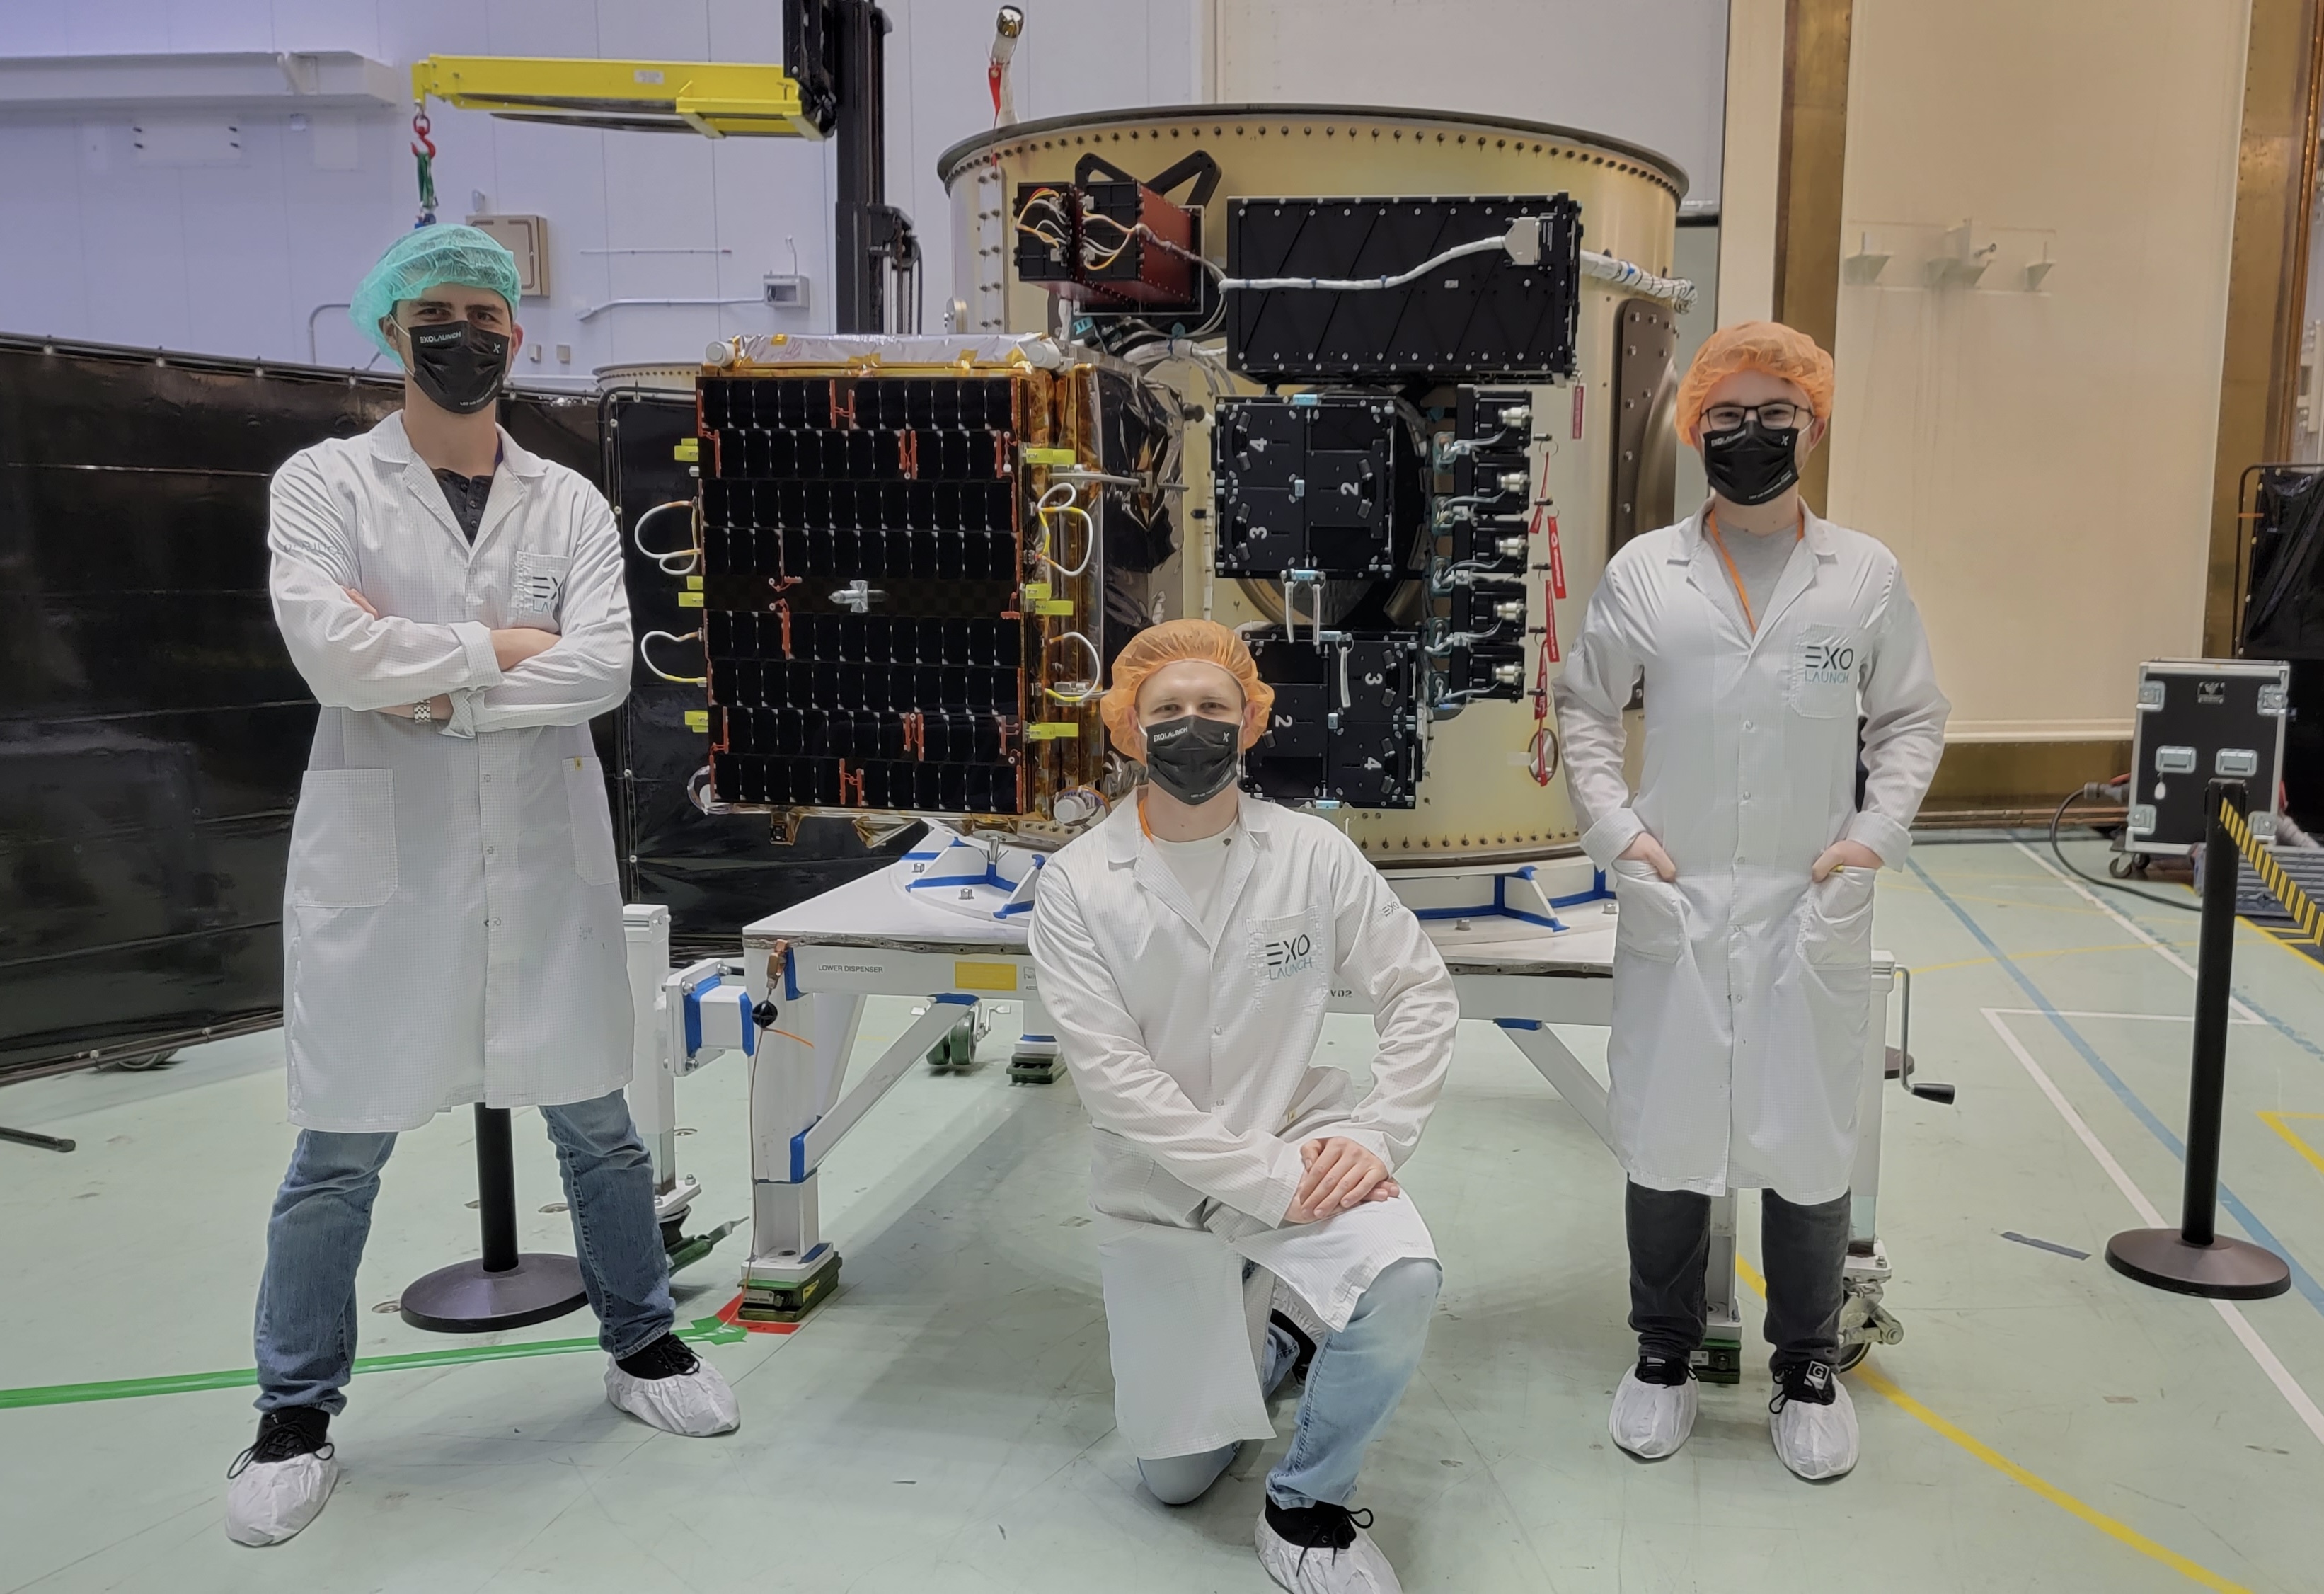 Zespół firmy Exolaunch podczas integracji satelitów przed startem, od frontu widoczny jest mikrosatelita firmy ICEYE (Źródło: Exolaunch/SpaceX)